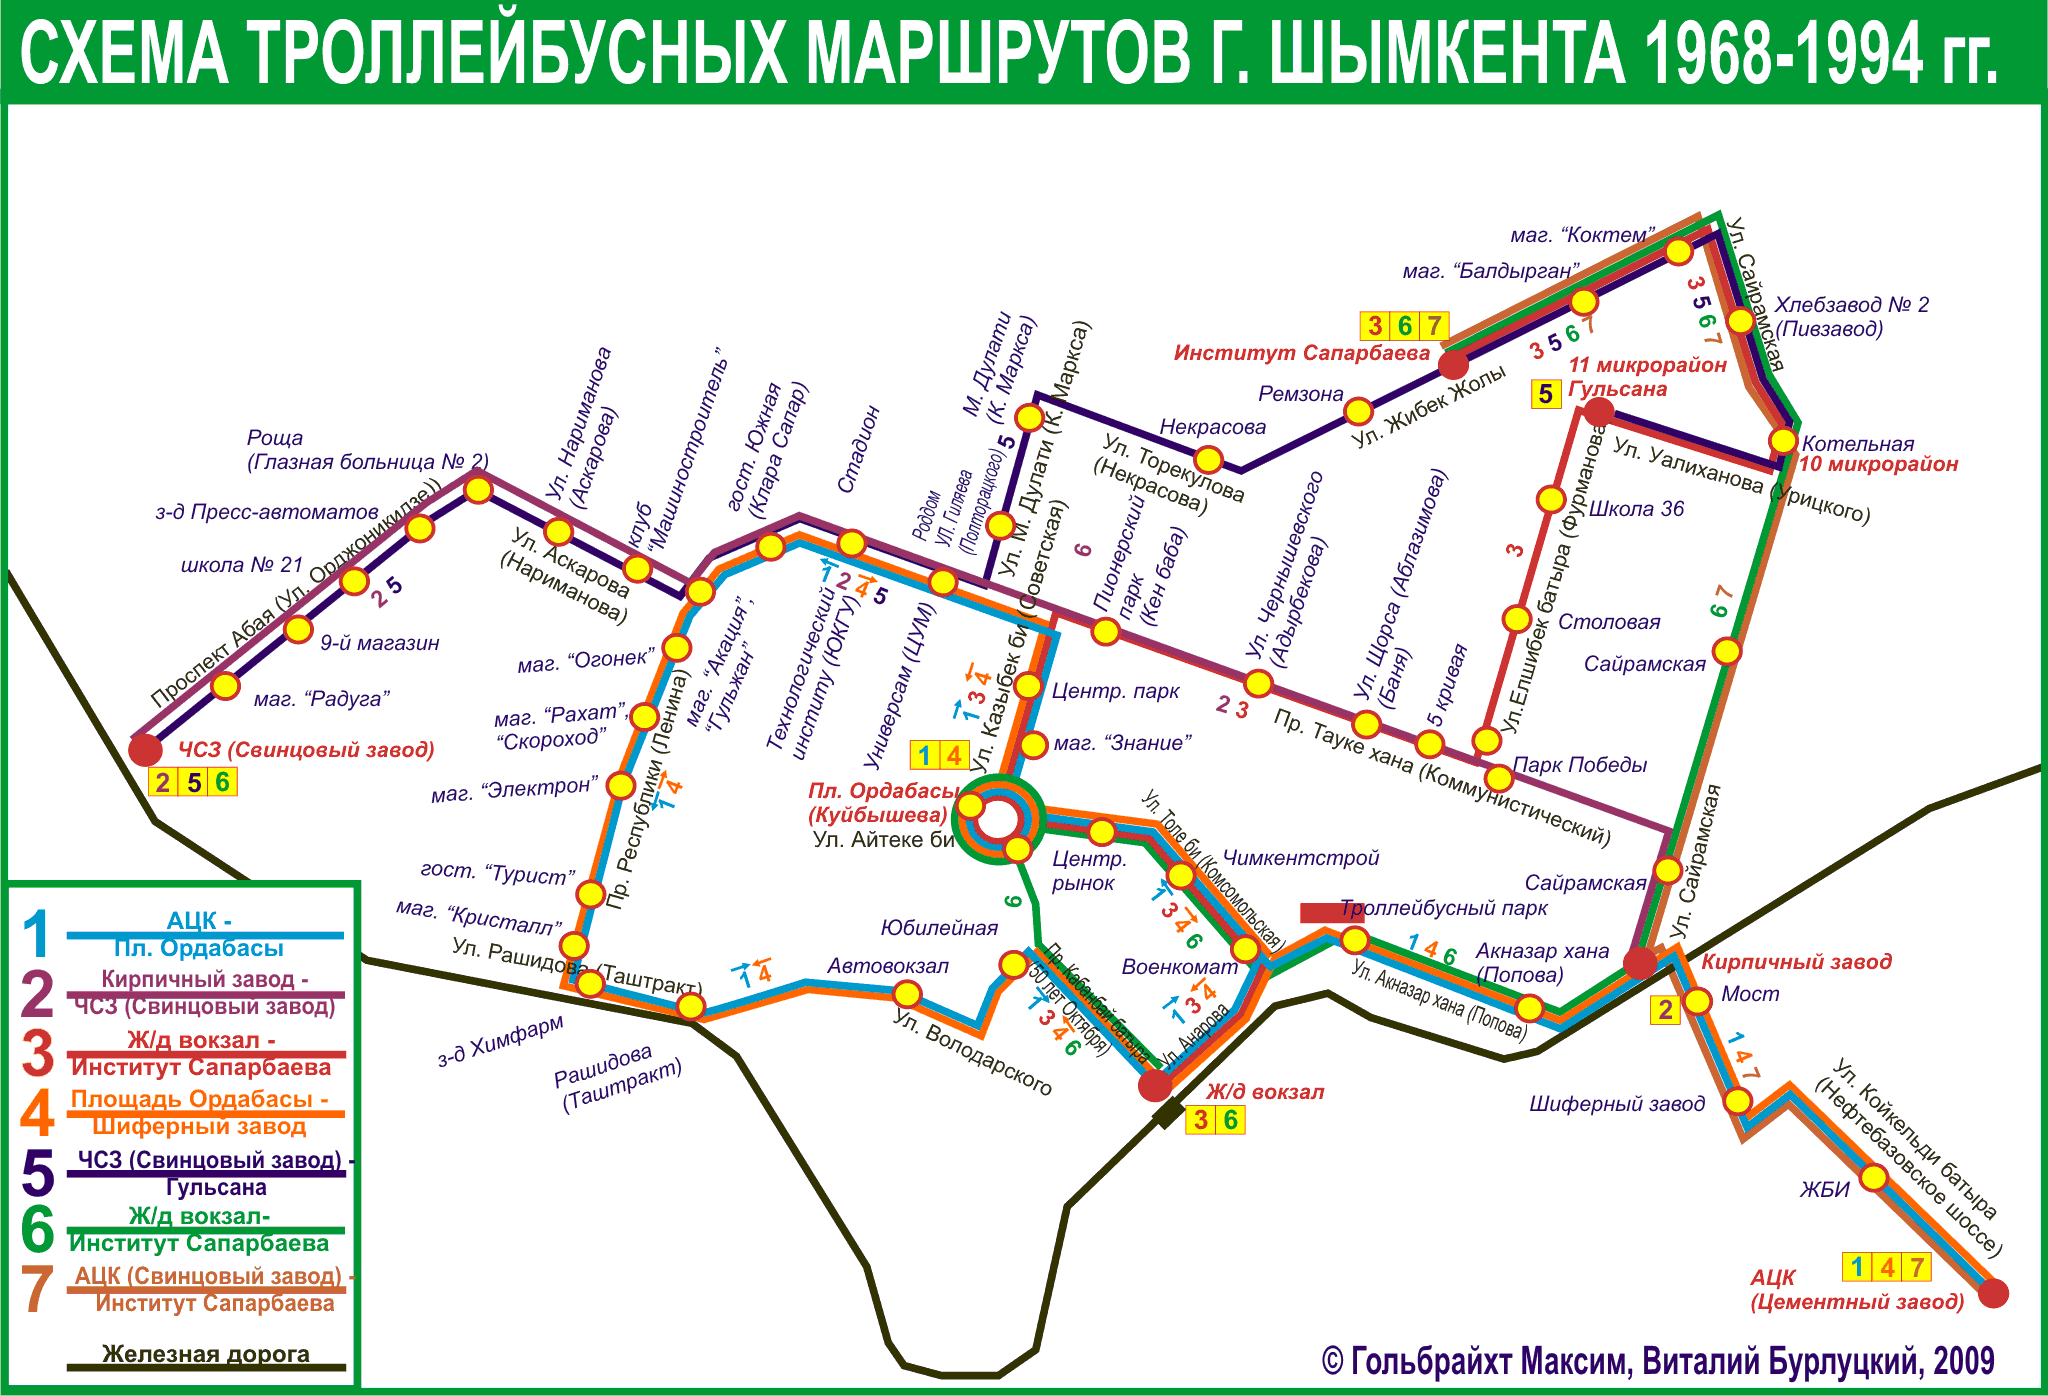 Šõmkent — Maps